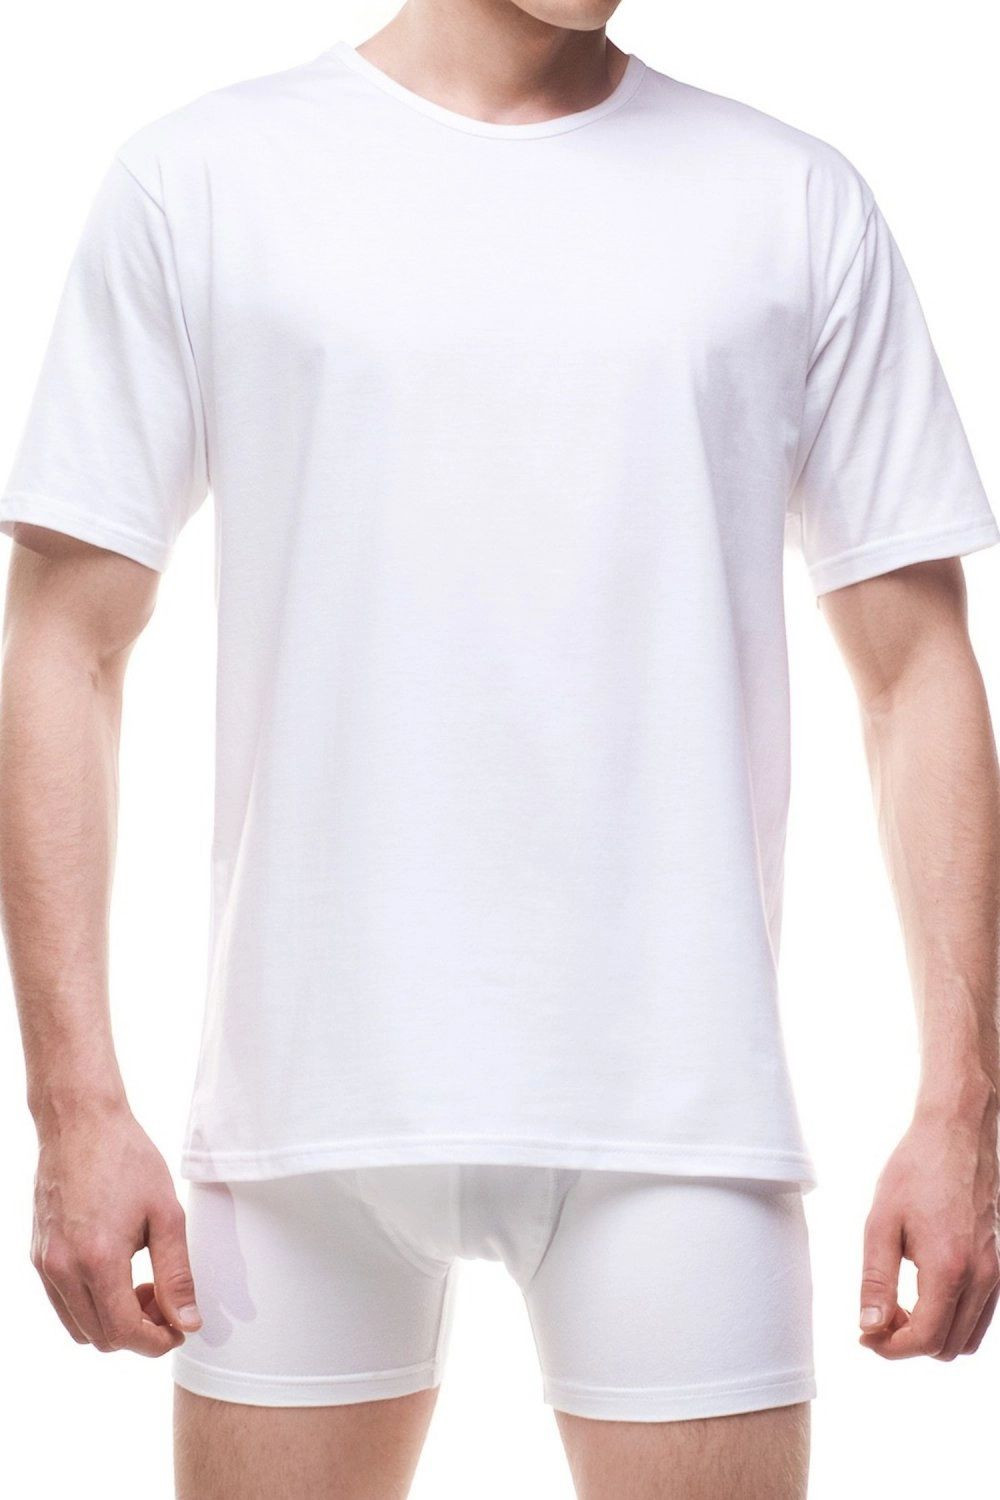 Pánské tričko 202 Authentic new white - CORNETTE Bílá XL